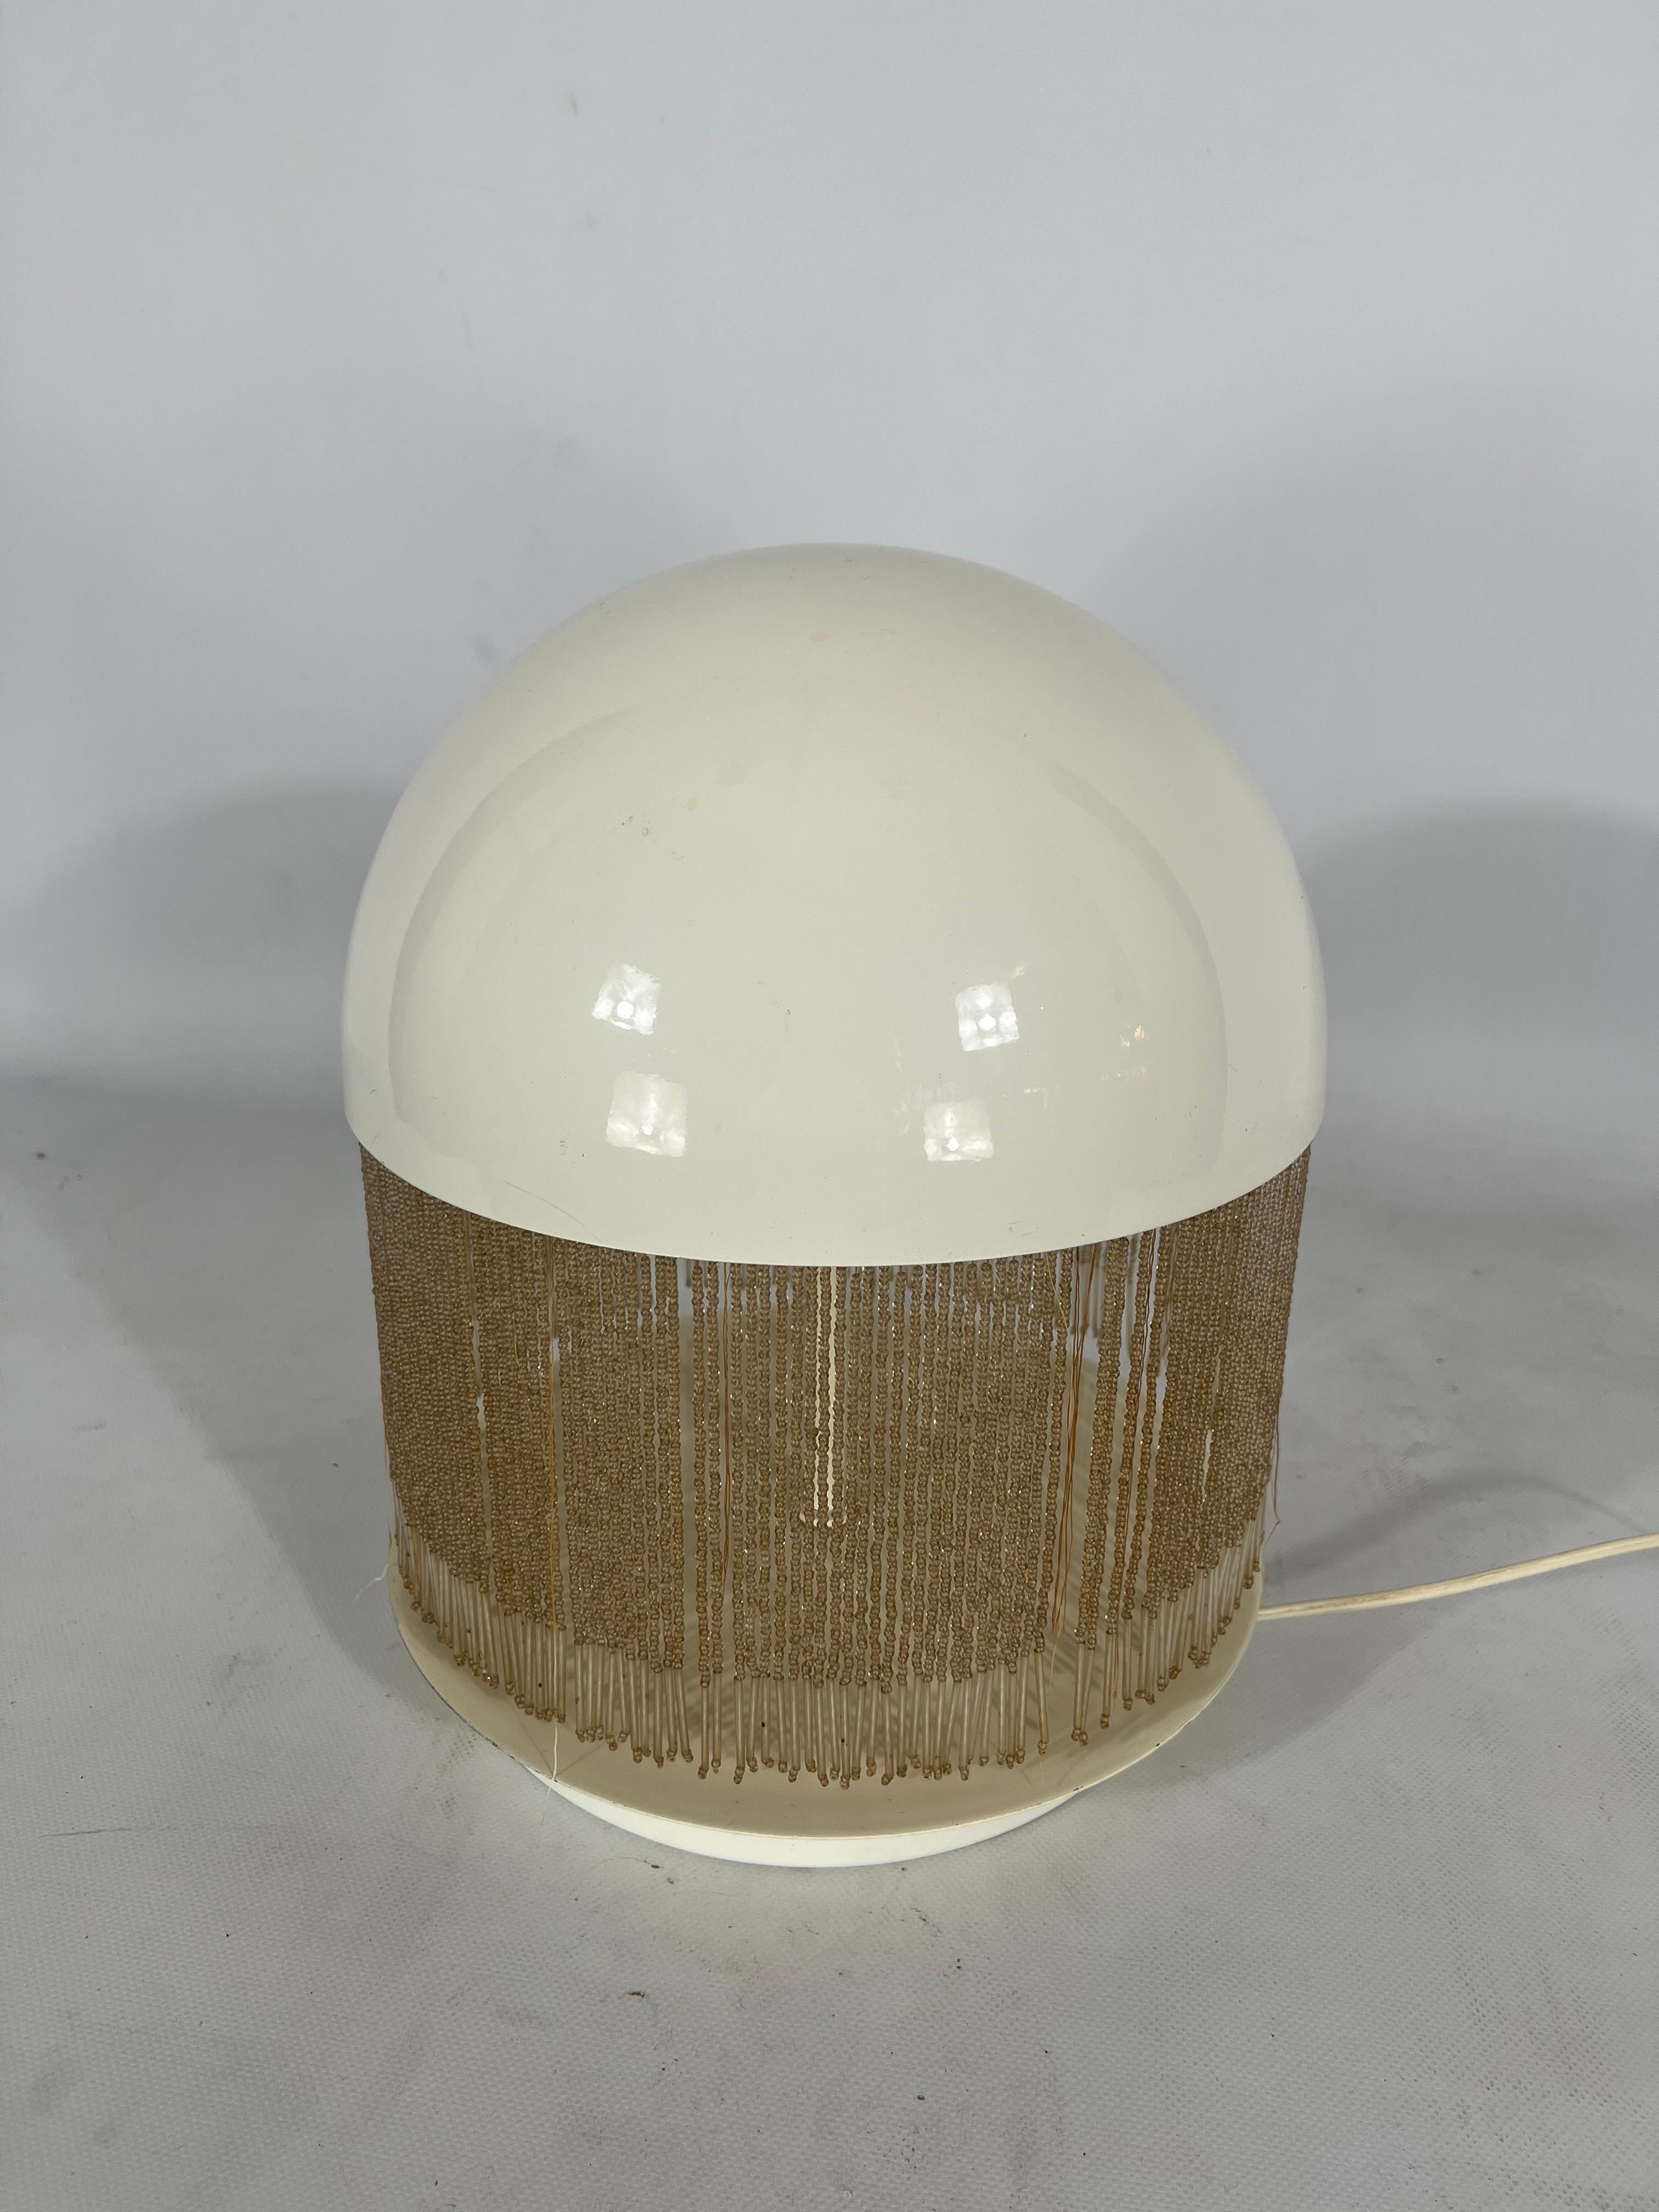 Rare Italian Modern Otero Table Lamp by Giuliana Gramigna for Quattrifolio, 1979 For Sale 8